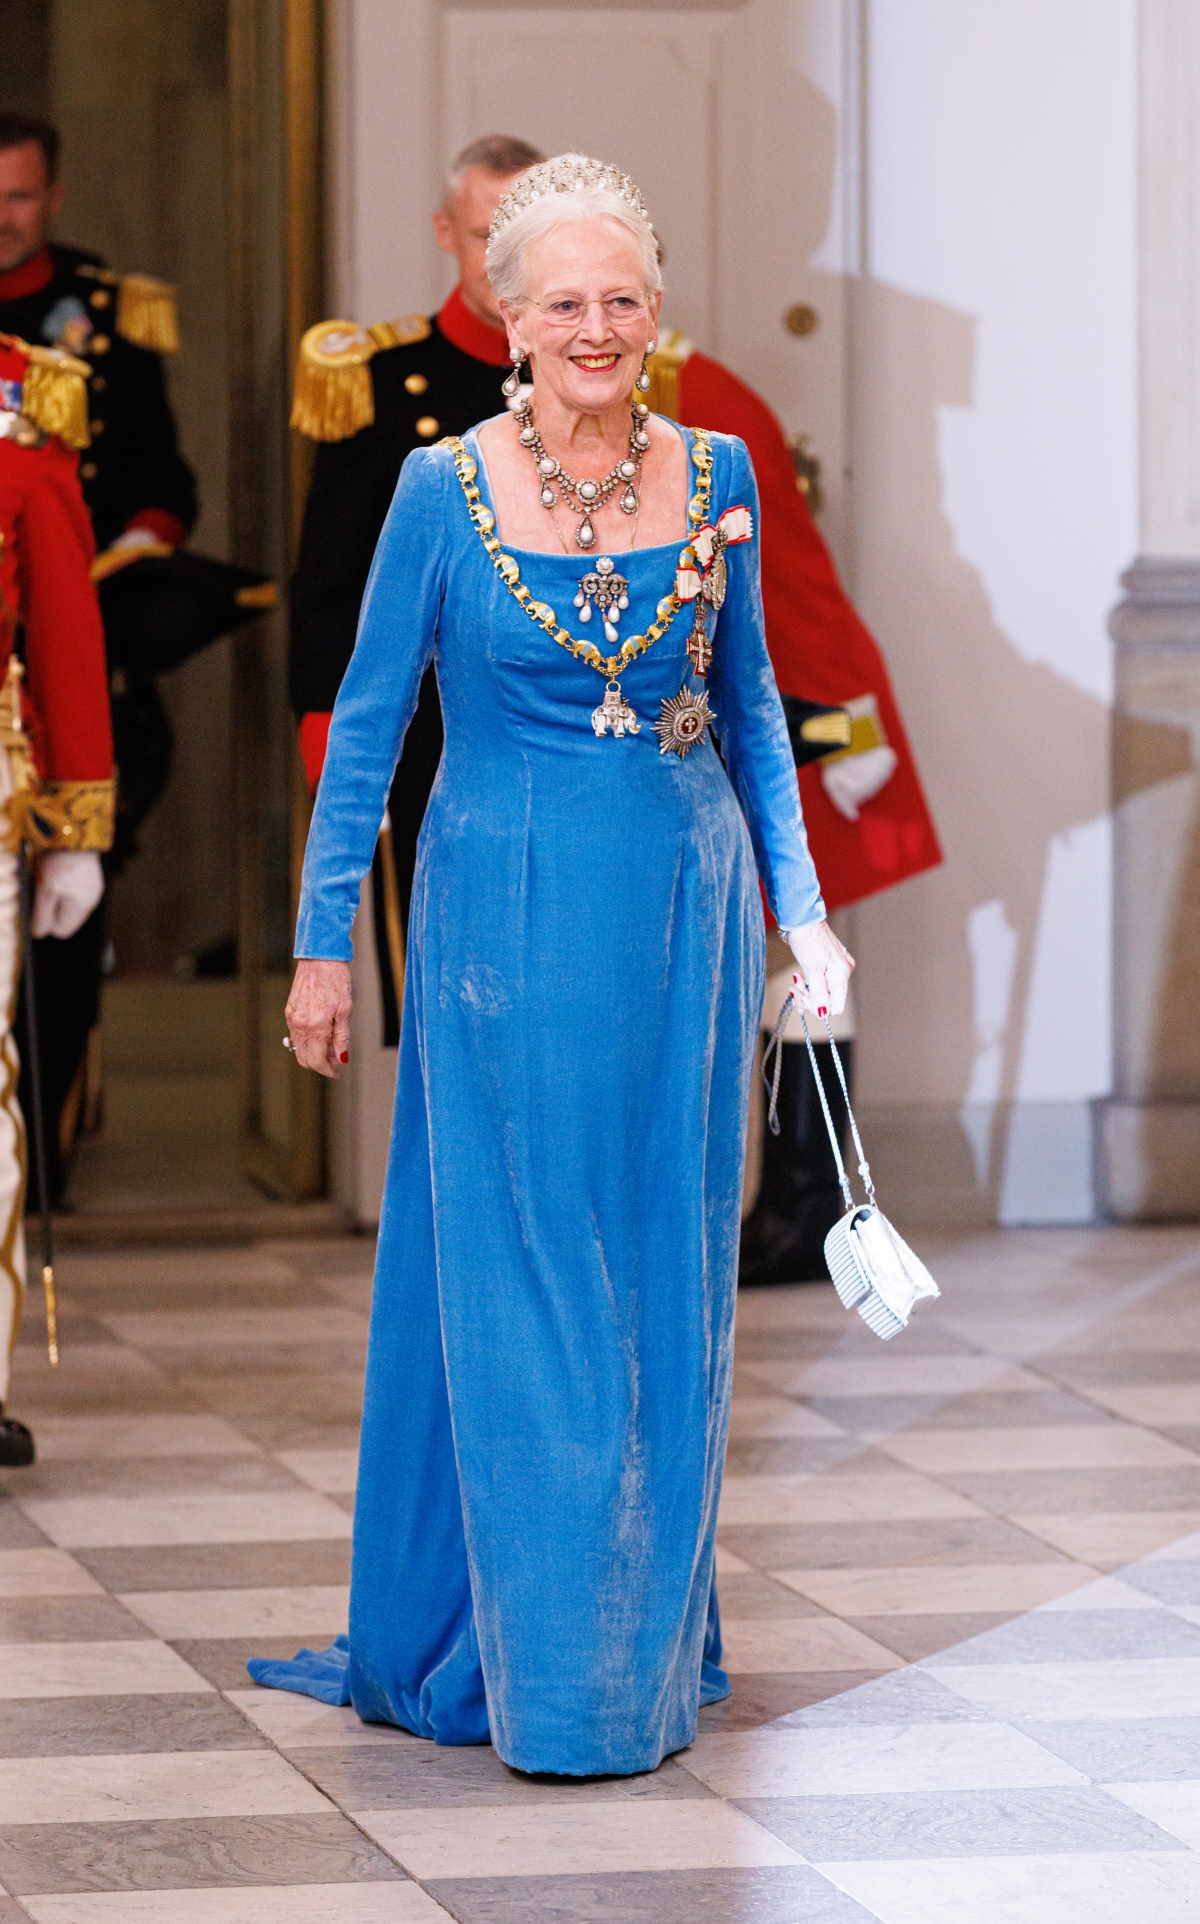 Koronacja duńskiego księcia Fryderyka i księżnej Marii. Duńska królowa Małgorzata II ogłosiła abdykację. Oto wszystko, co wiemy na temat przekazania korony księciu Fryderykowi i jego żonie, księżnej Marii.